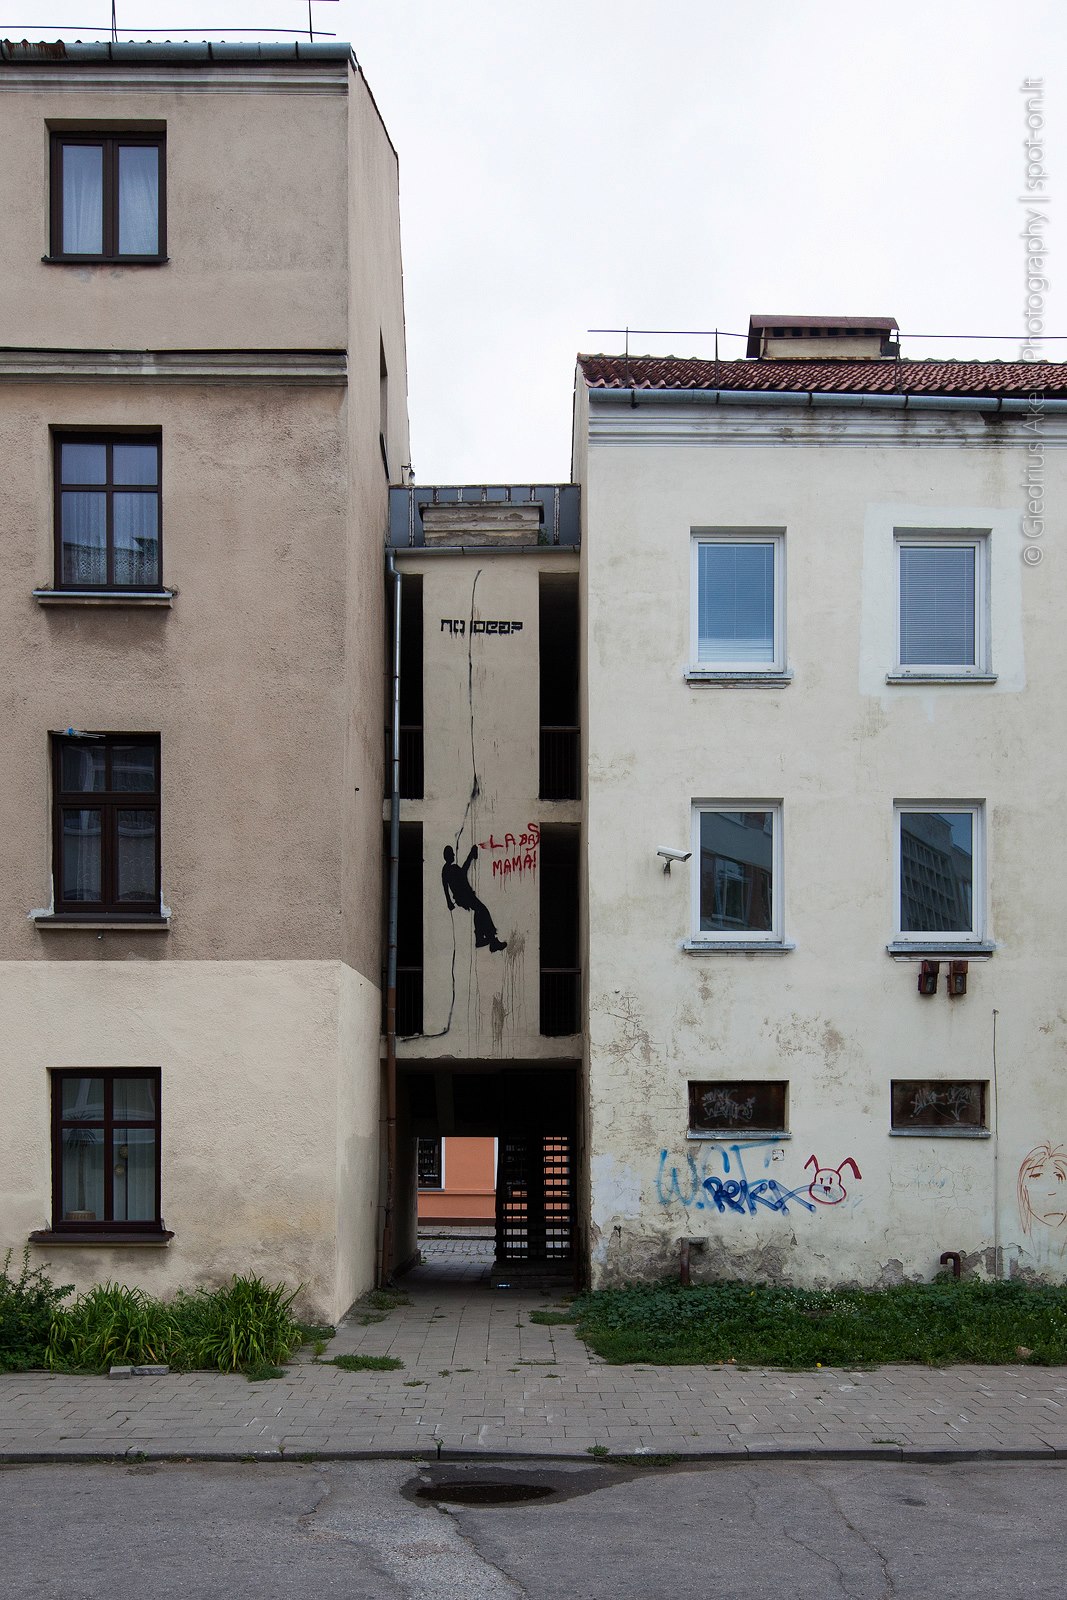 Architektūros [ekskursijų] fondas. Klaipėda. Sovietmečio modernizmas. Nuotraukos aut. – Giedrius Akelis Photography | spot-on.lt